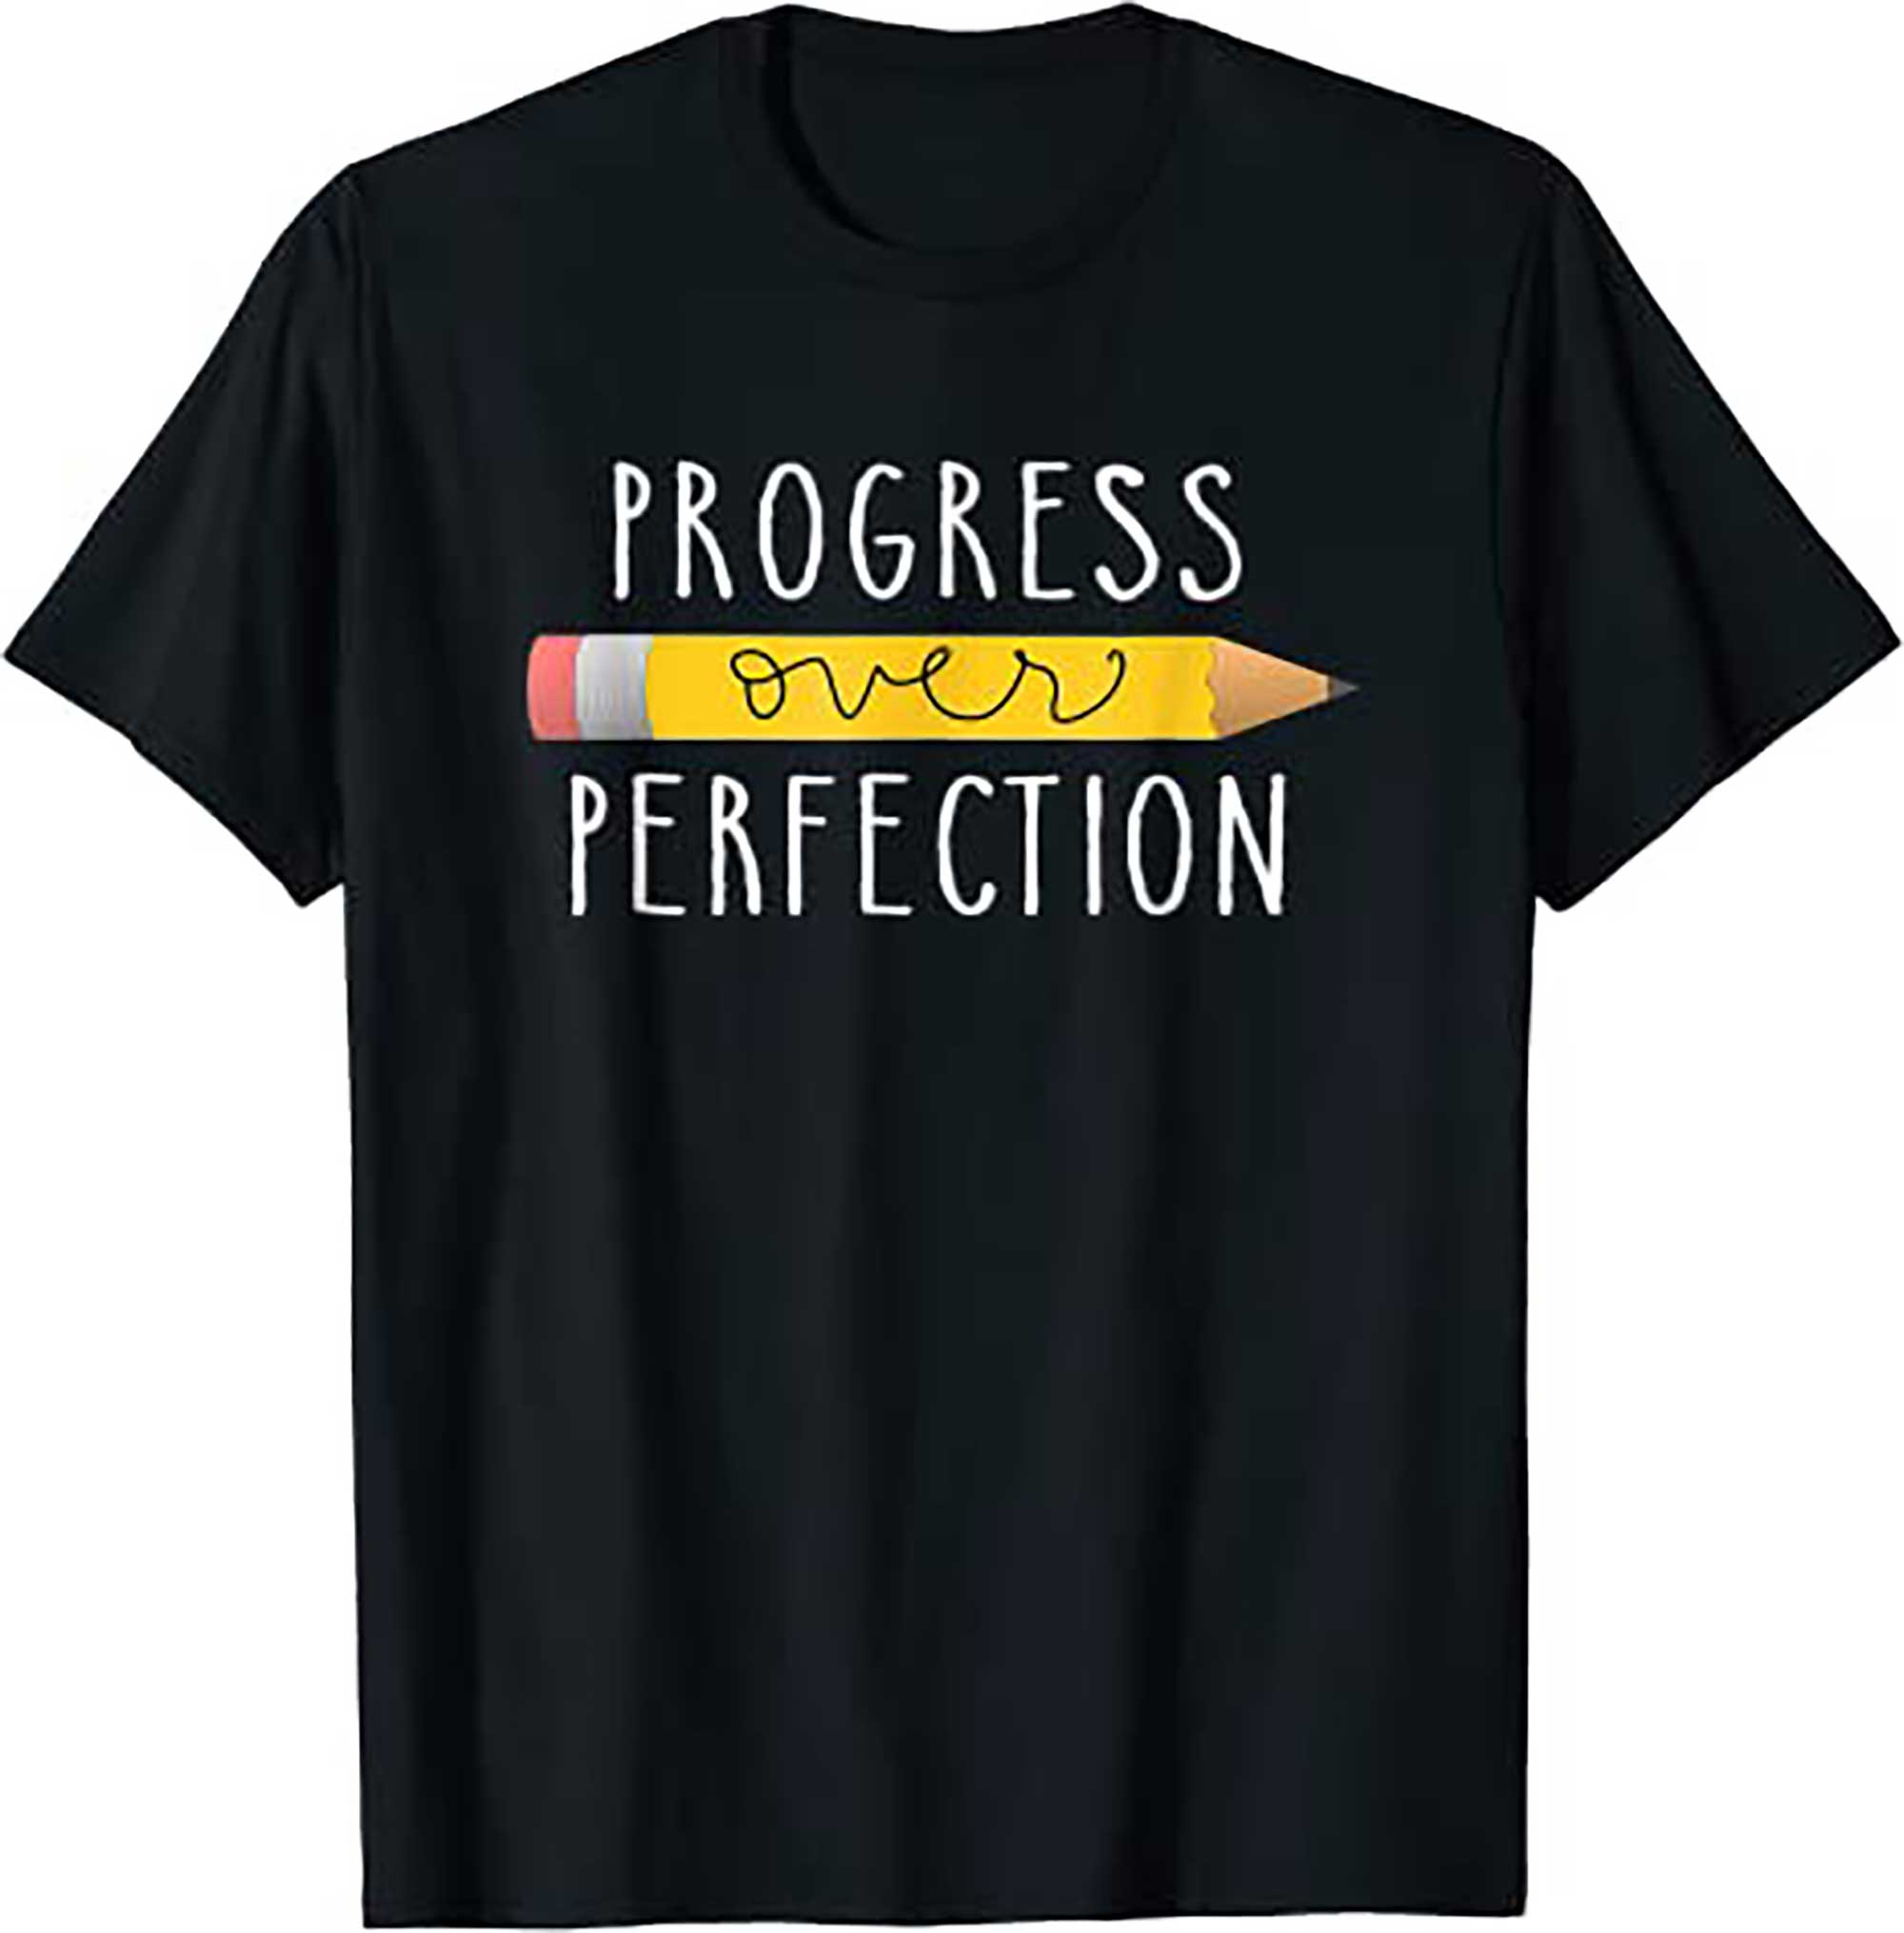 Progress Over Perfection Motivational Teacher Tee T Shirt